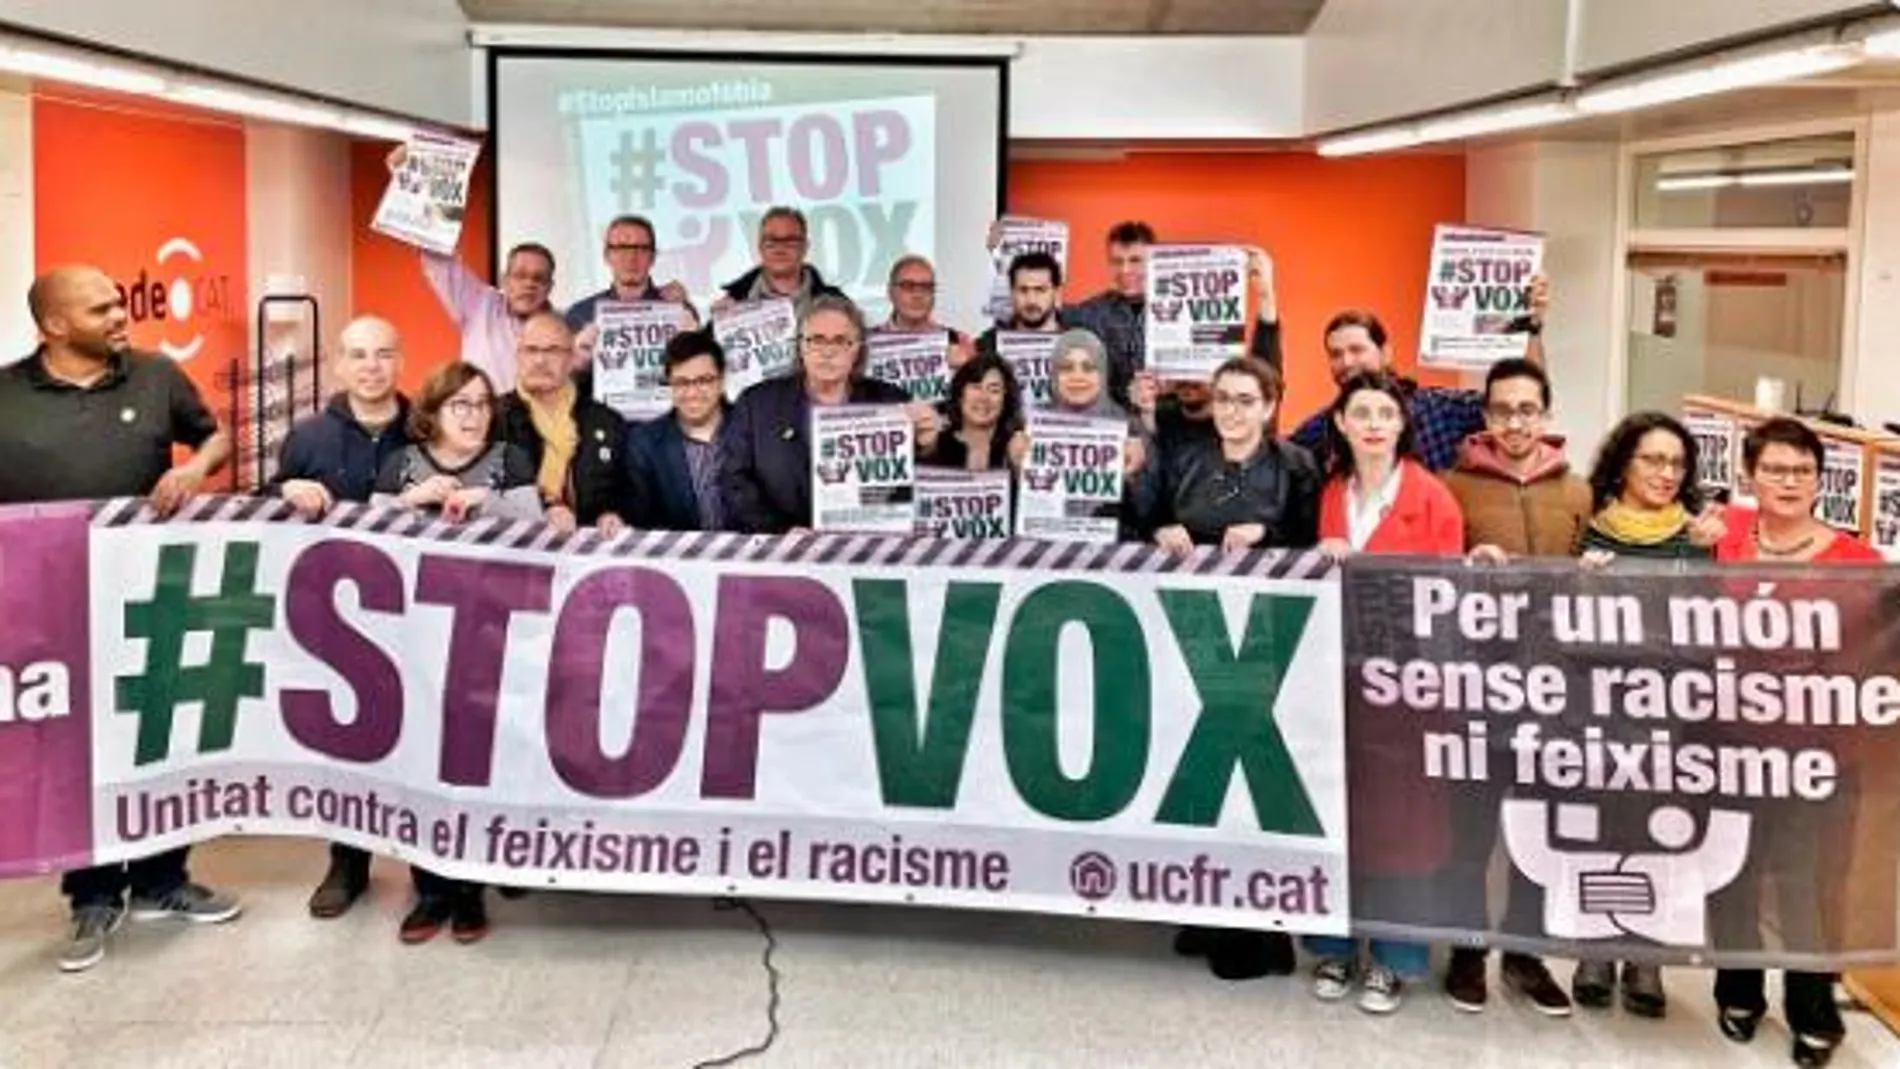 Pancarta #StopVox de los partidos que convocaron la manifestación